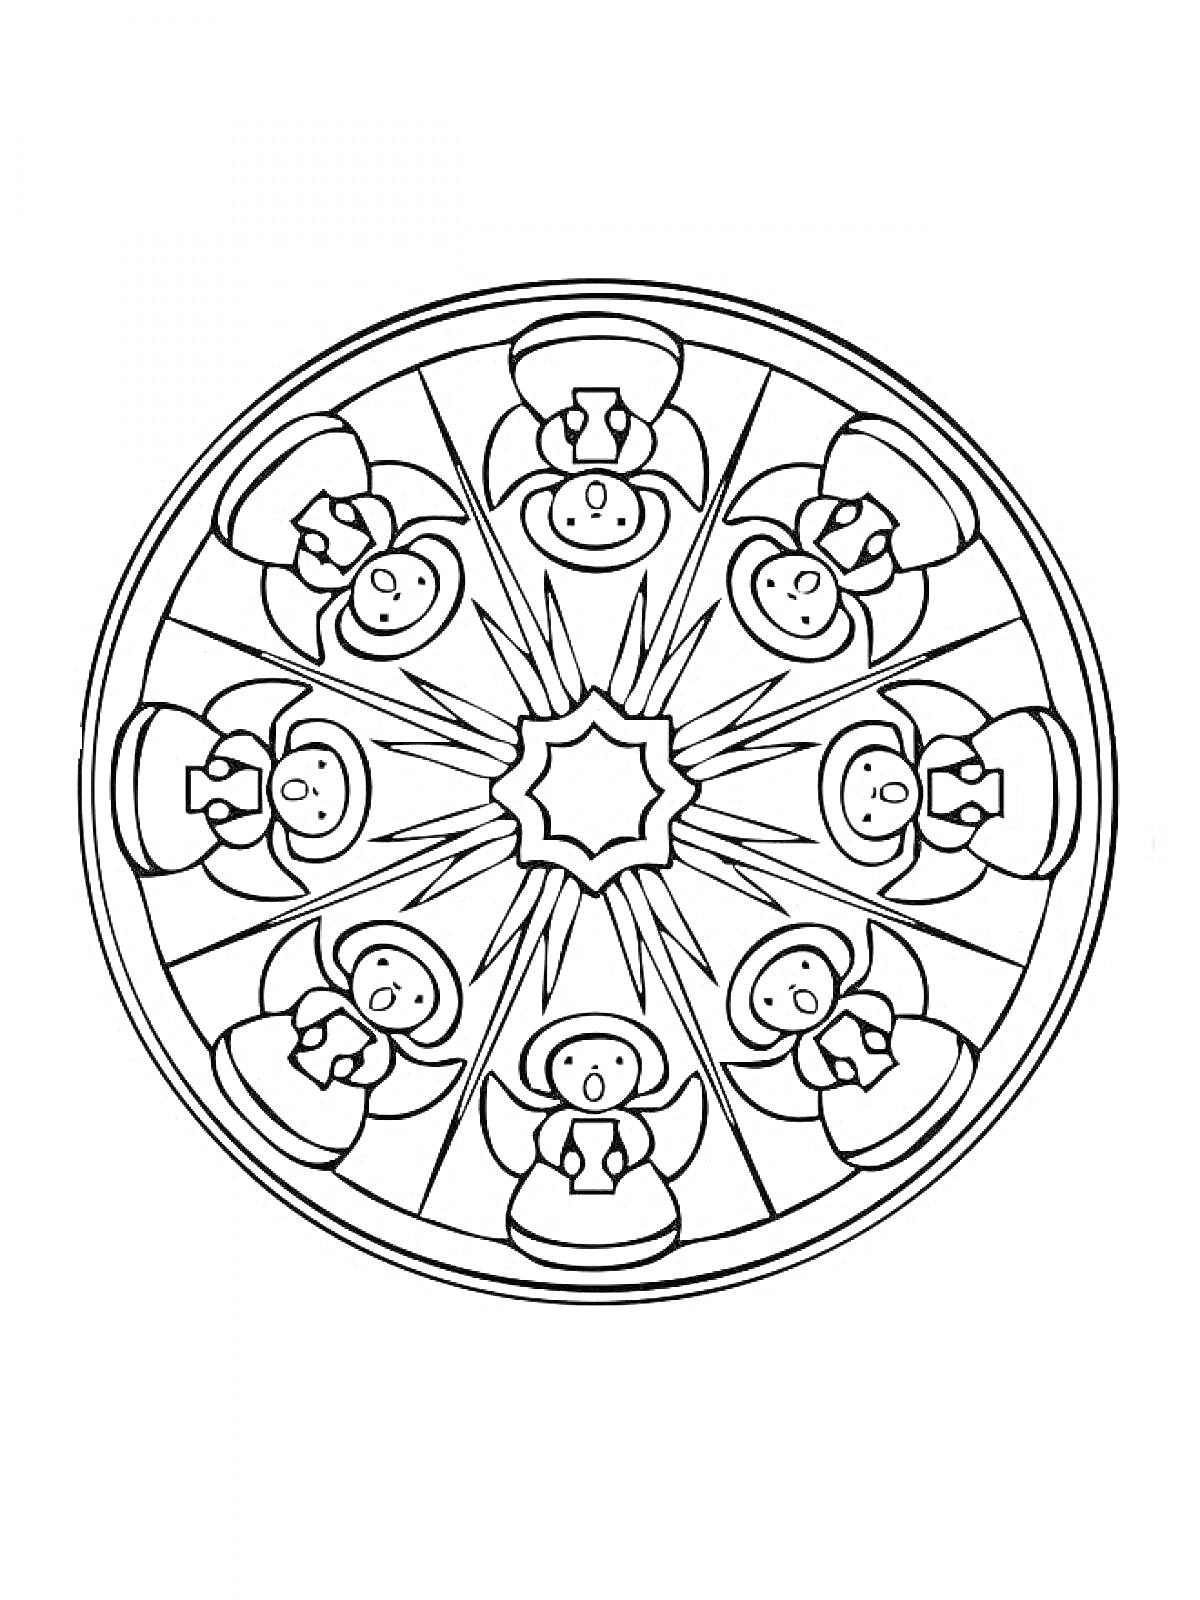 Раскраска Мандала с ангелами и звездой по центру